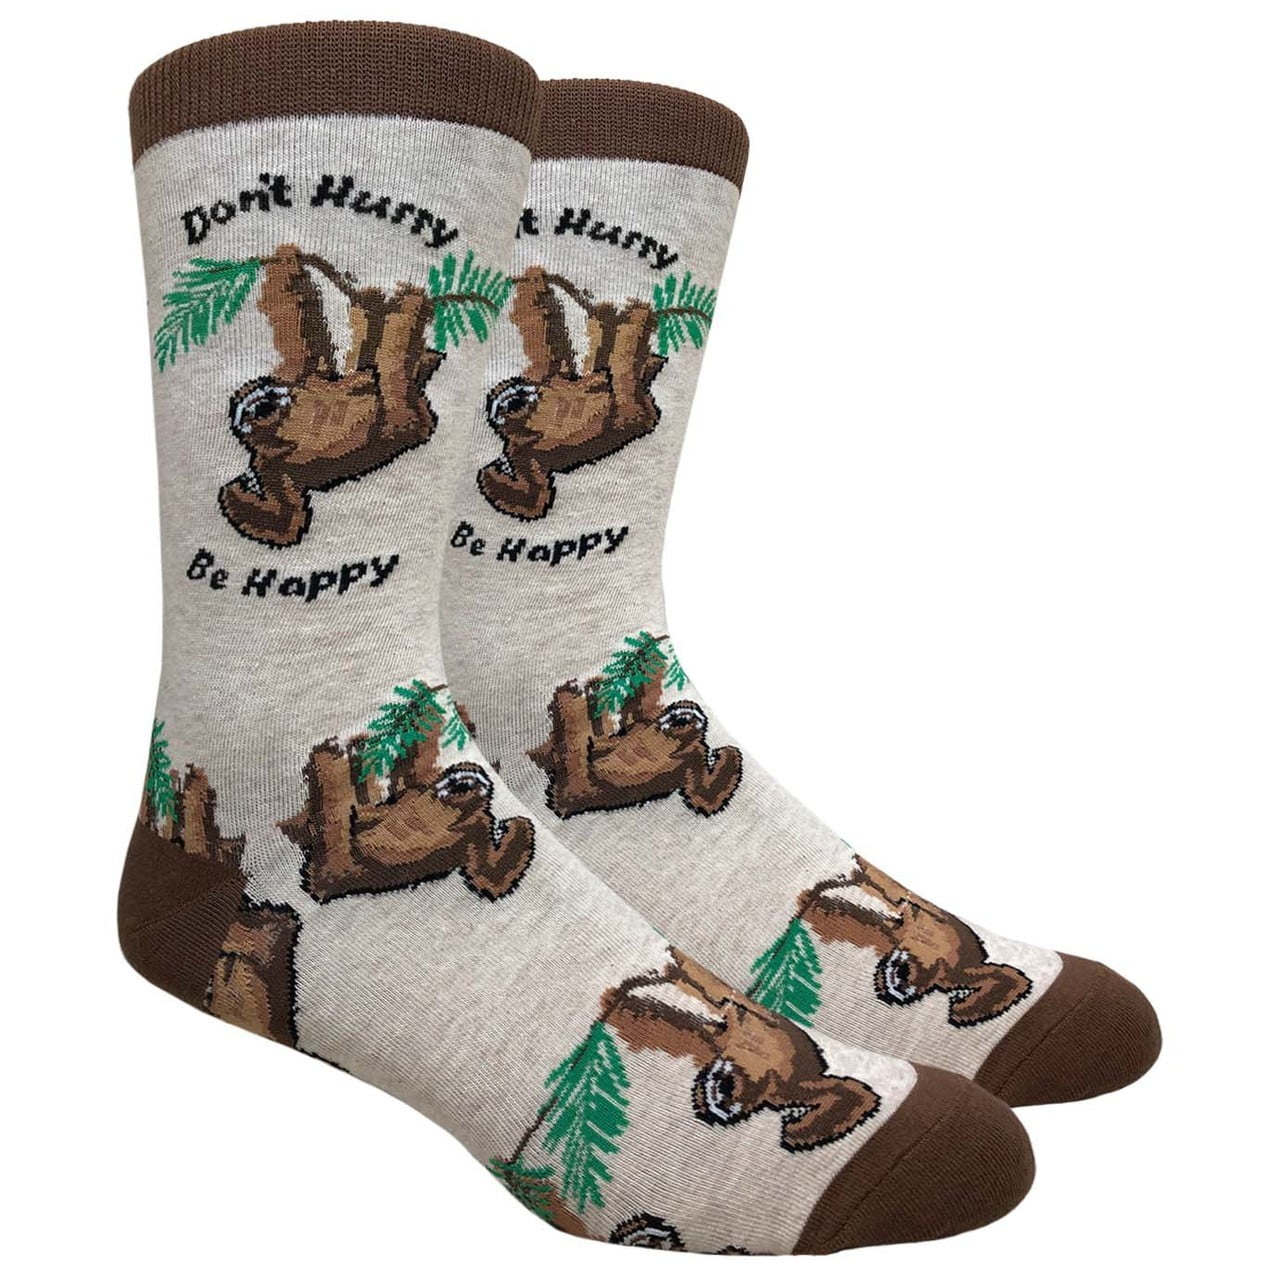 New Men's Retro Cool Novelty Sloth Ankle Socks Gift 1 Pair 